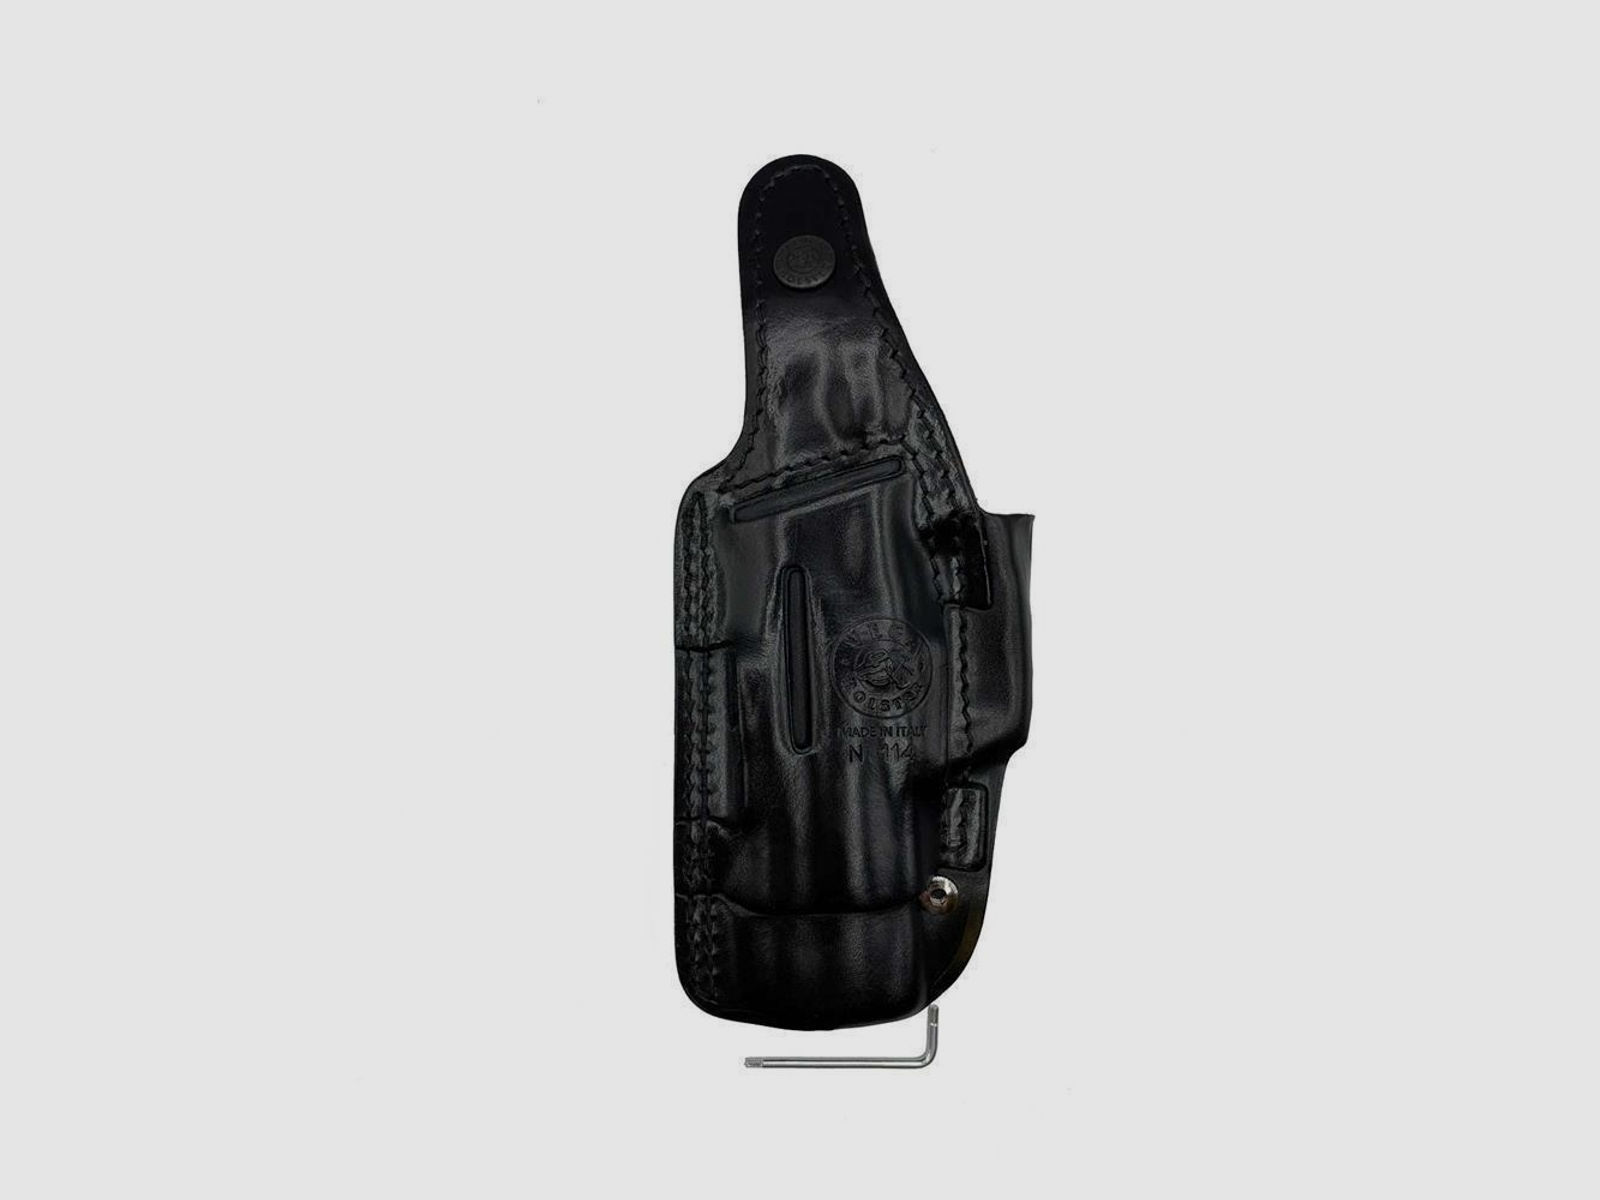 Schnellziehholster mit drei Tragepositionen Glock 42-Braun-Rechtshänder